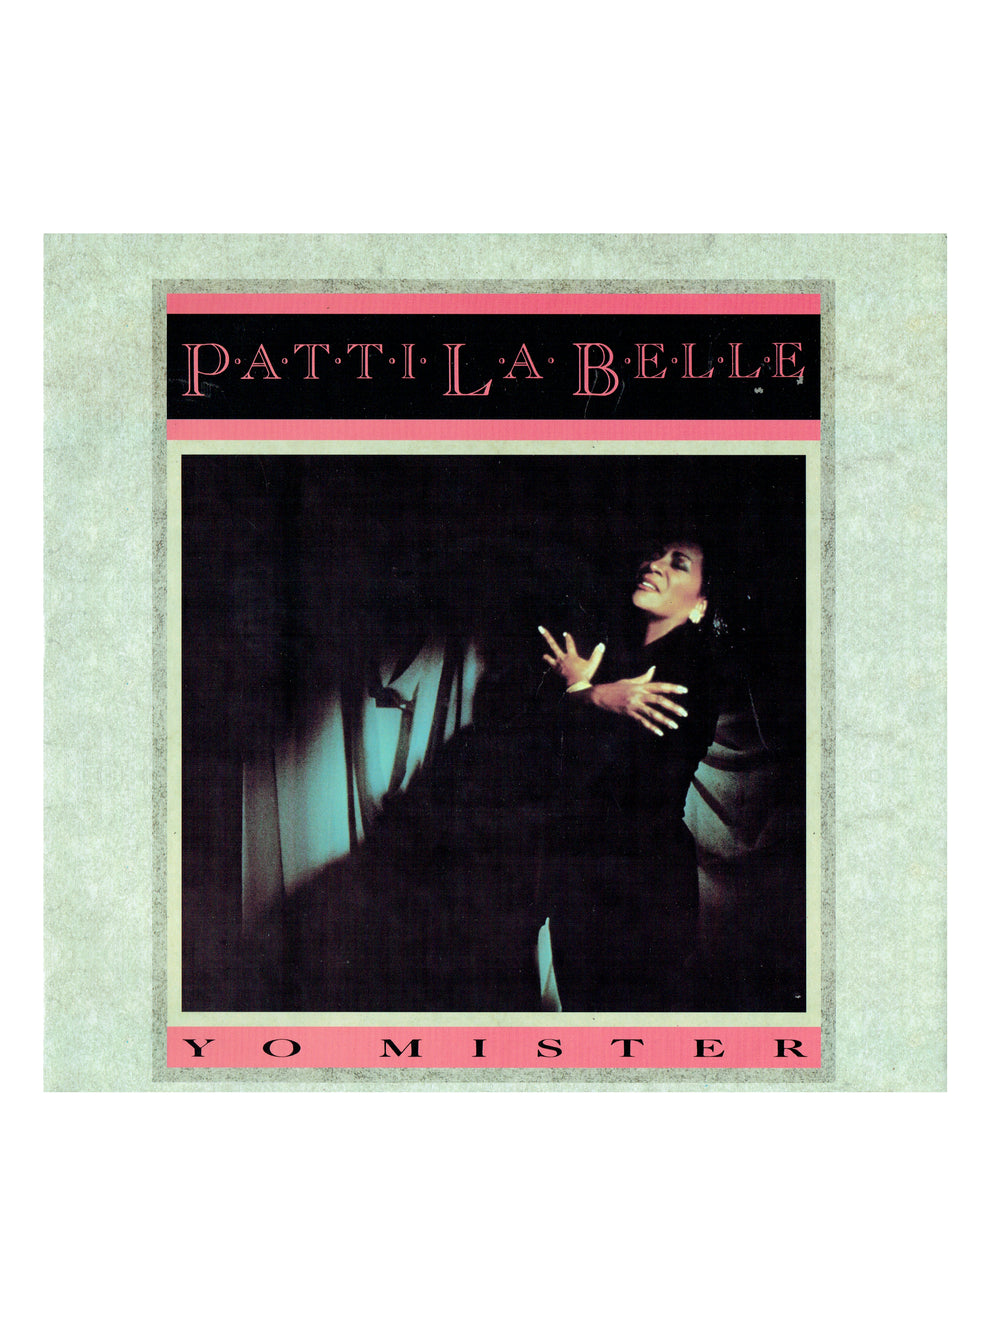 Patti La Belle Yo Mister 12 Inch Vinyl Single UK Release Written By Prince